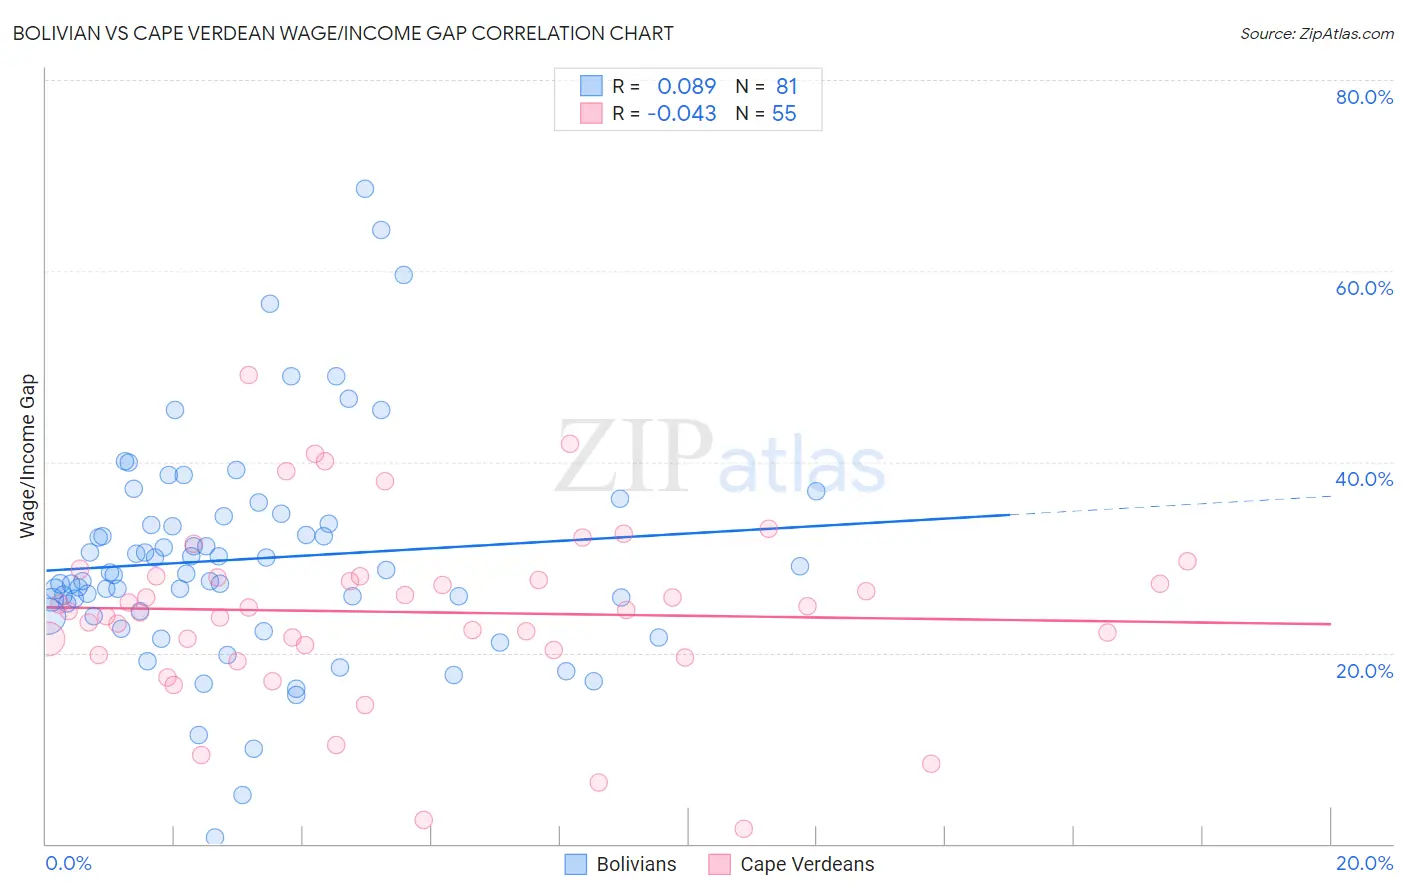 Bolivian vs Cape Verdean Wage/Income Gap